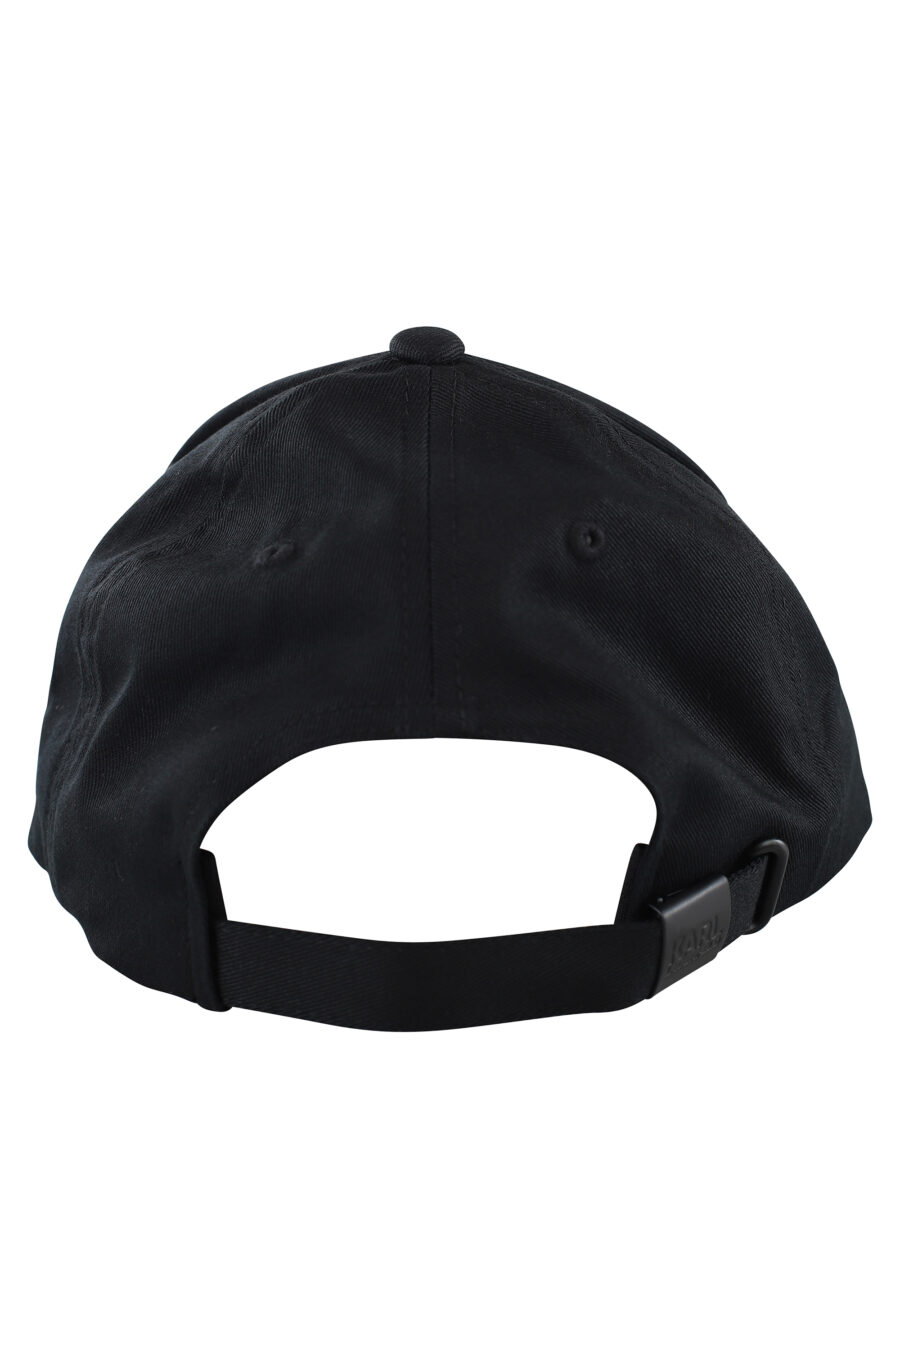 Gorra negra con logo monocromático - IMG 7062